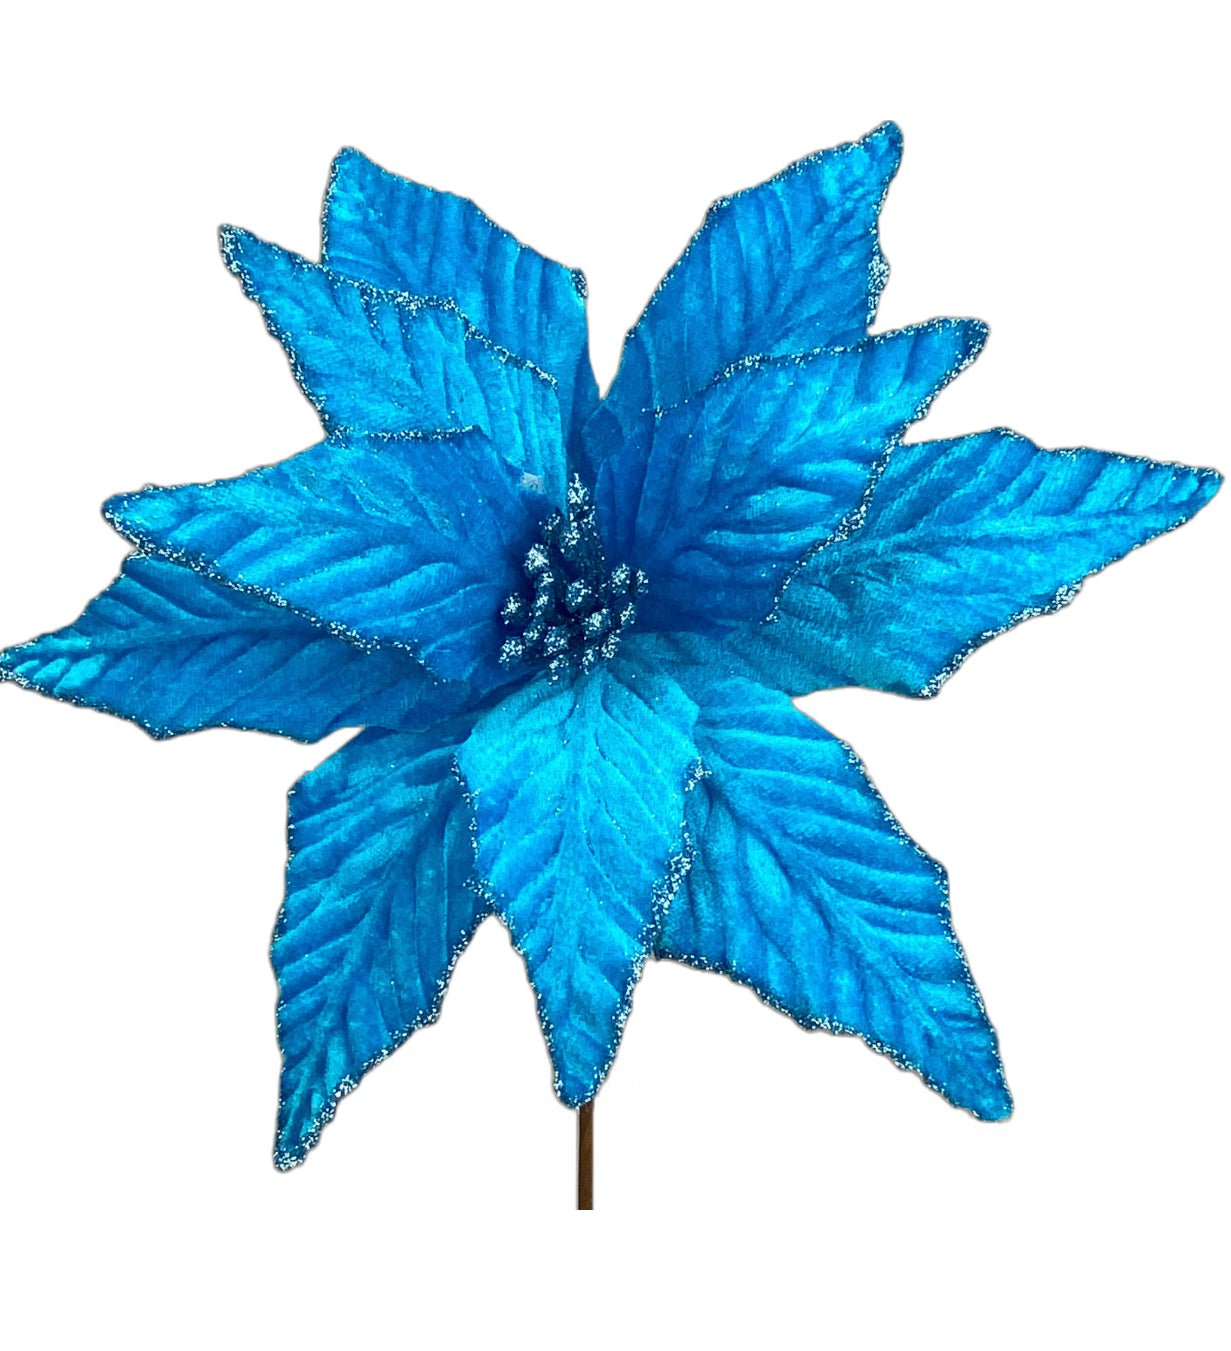 Velvet poinsettia pick - blue - Greenery Market85730BL